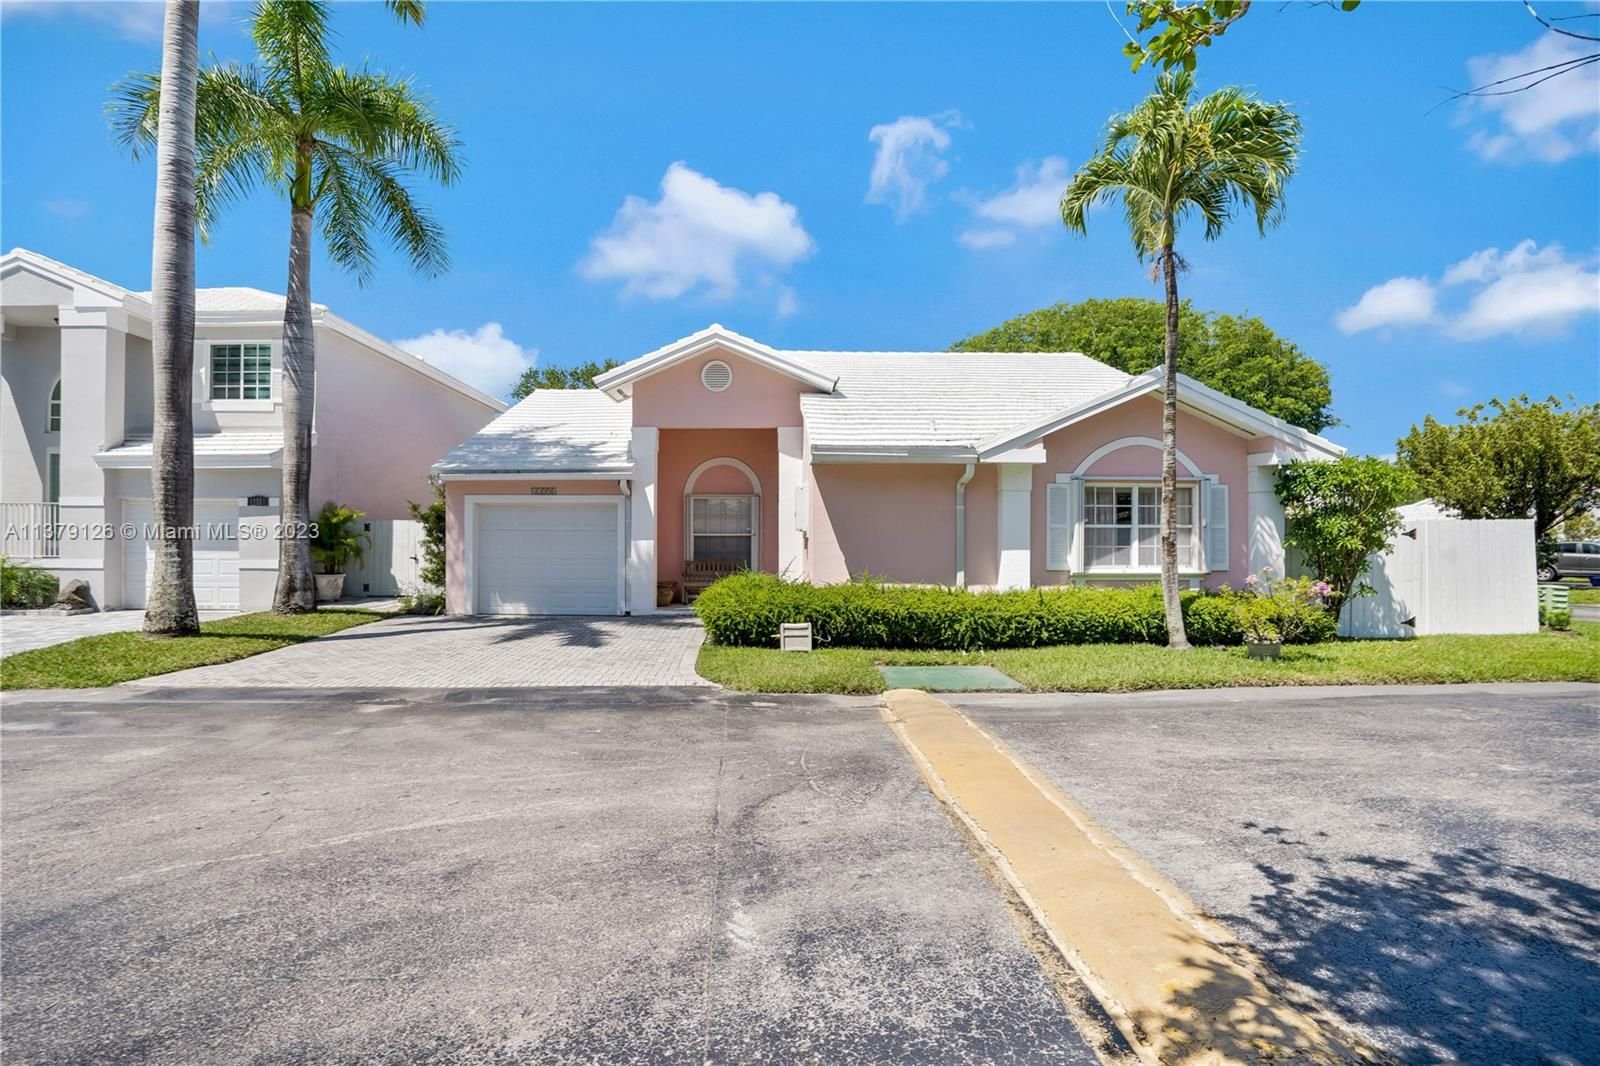 Real estate property located at 11251 64th Ln, Miami-Dade County, Miami, FL